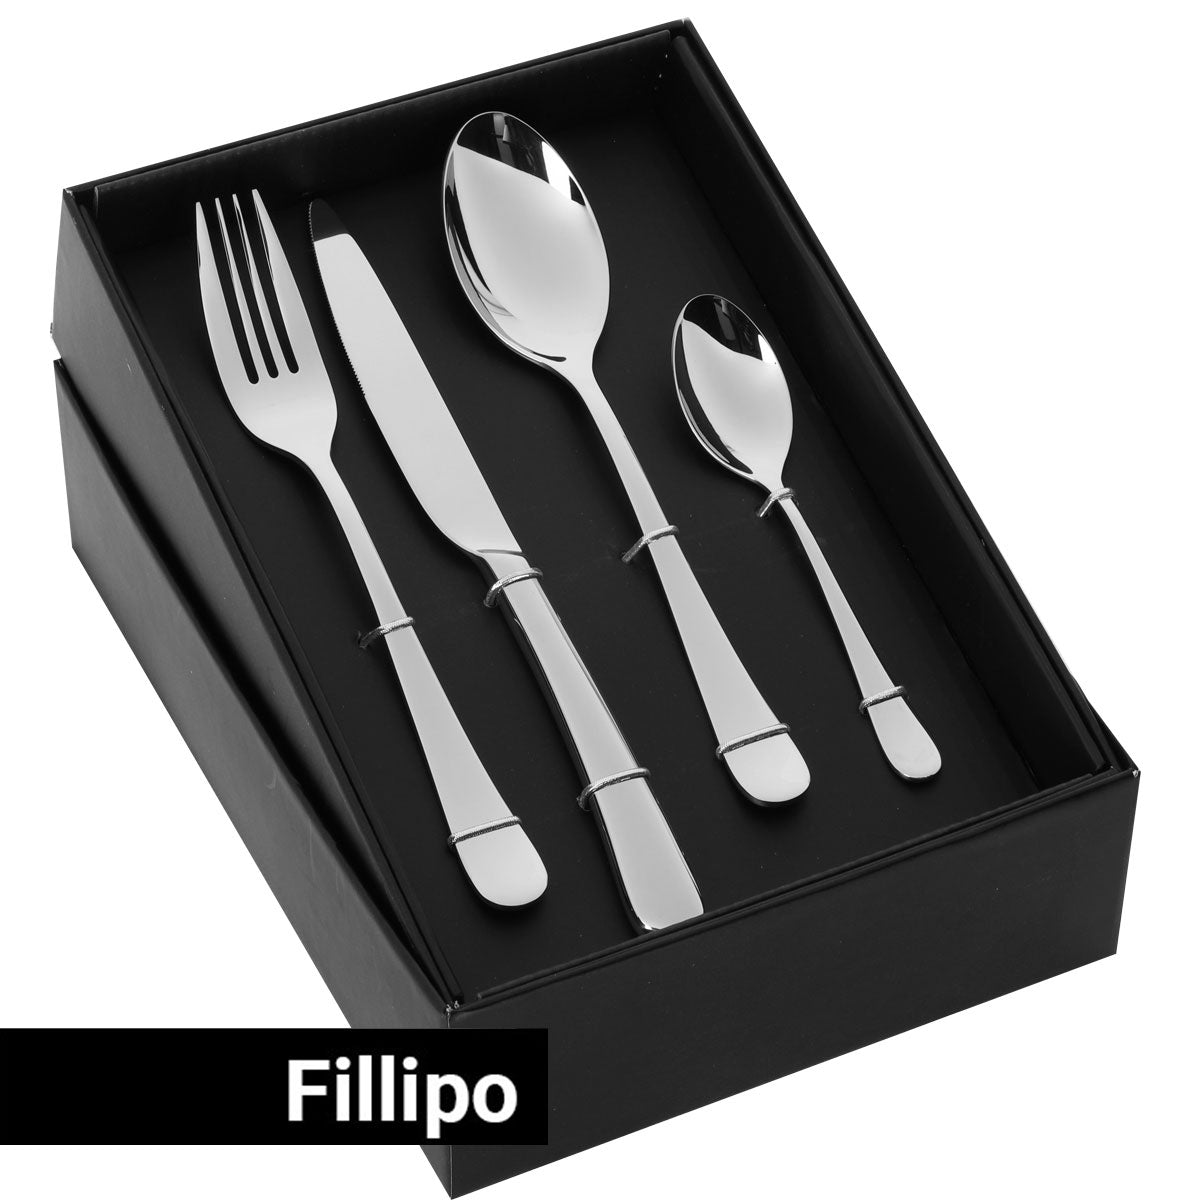 Bestikksett Fillipo - 24 deler - For 6 personer